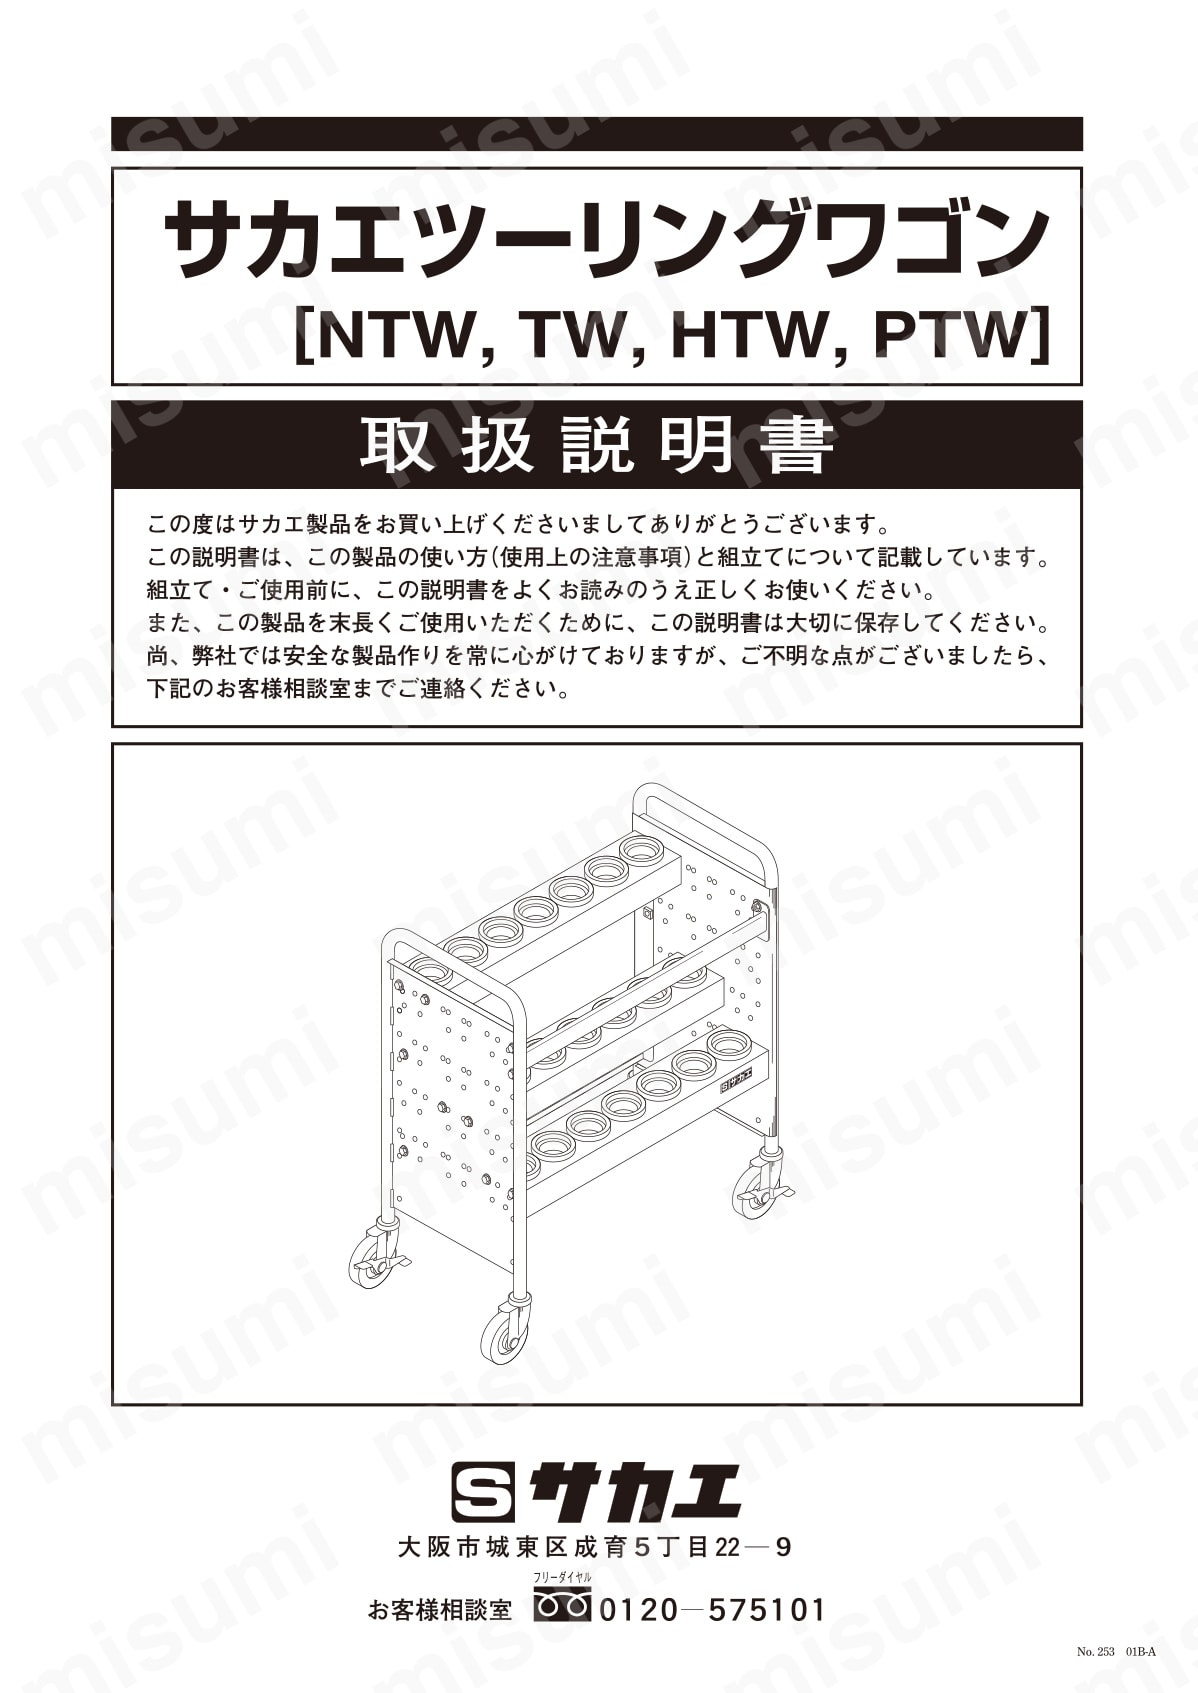 ツーリングワゴン NTW・PTW | サカエ | MISUMI(ミスミ)